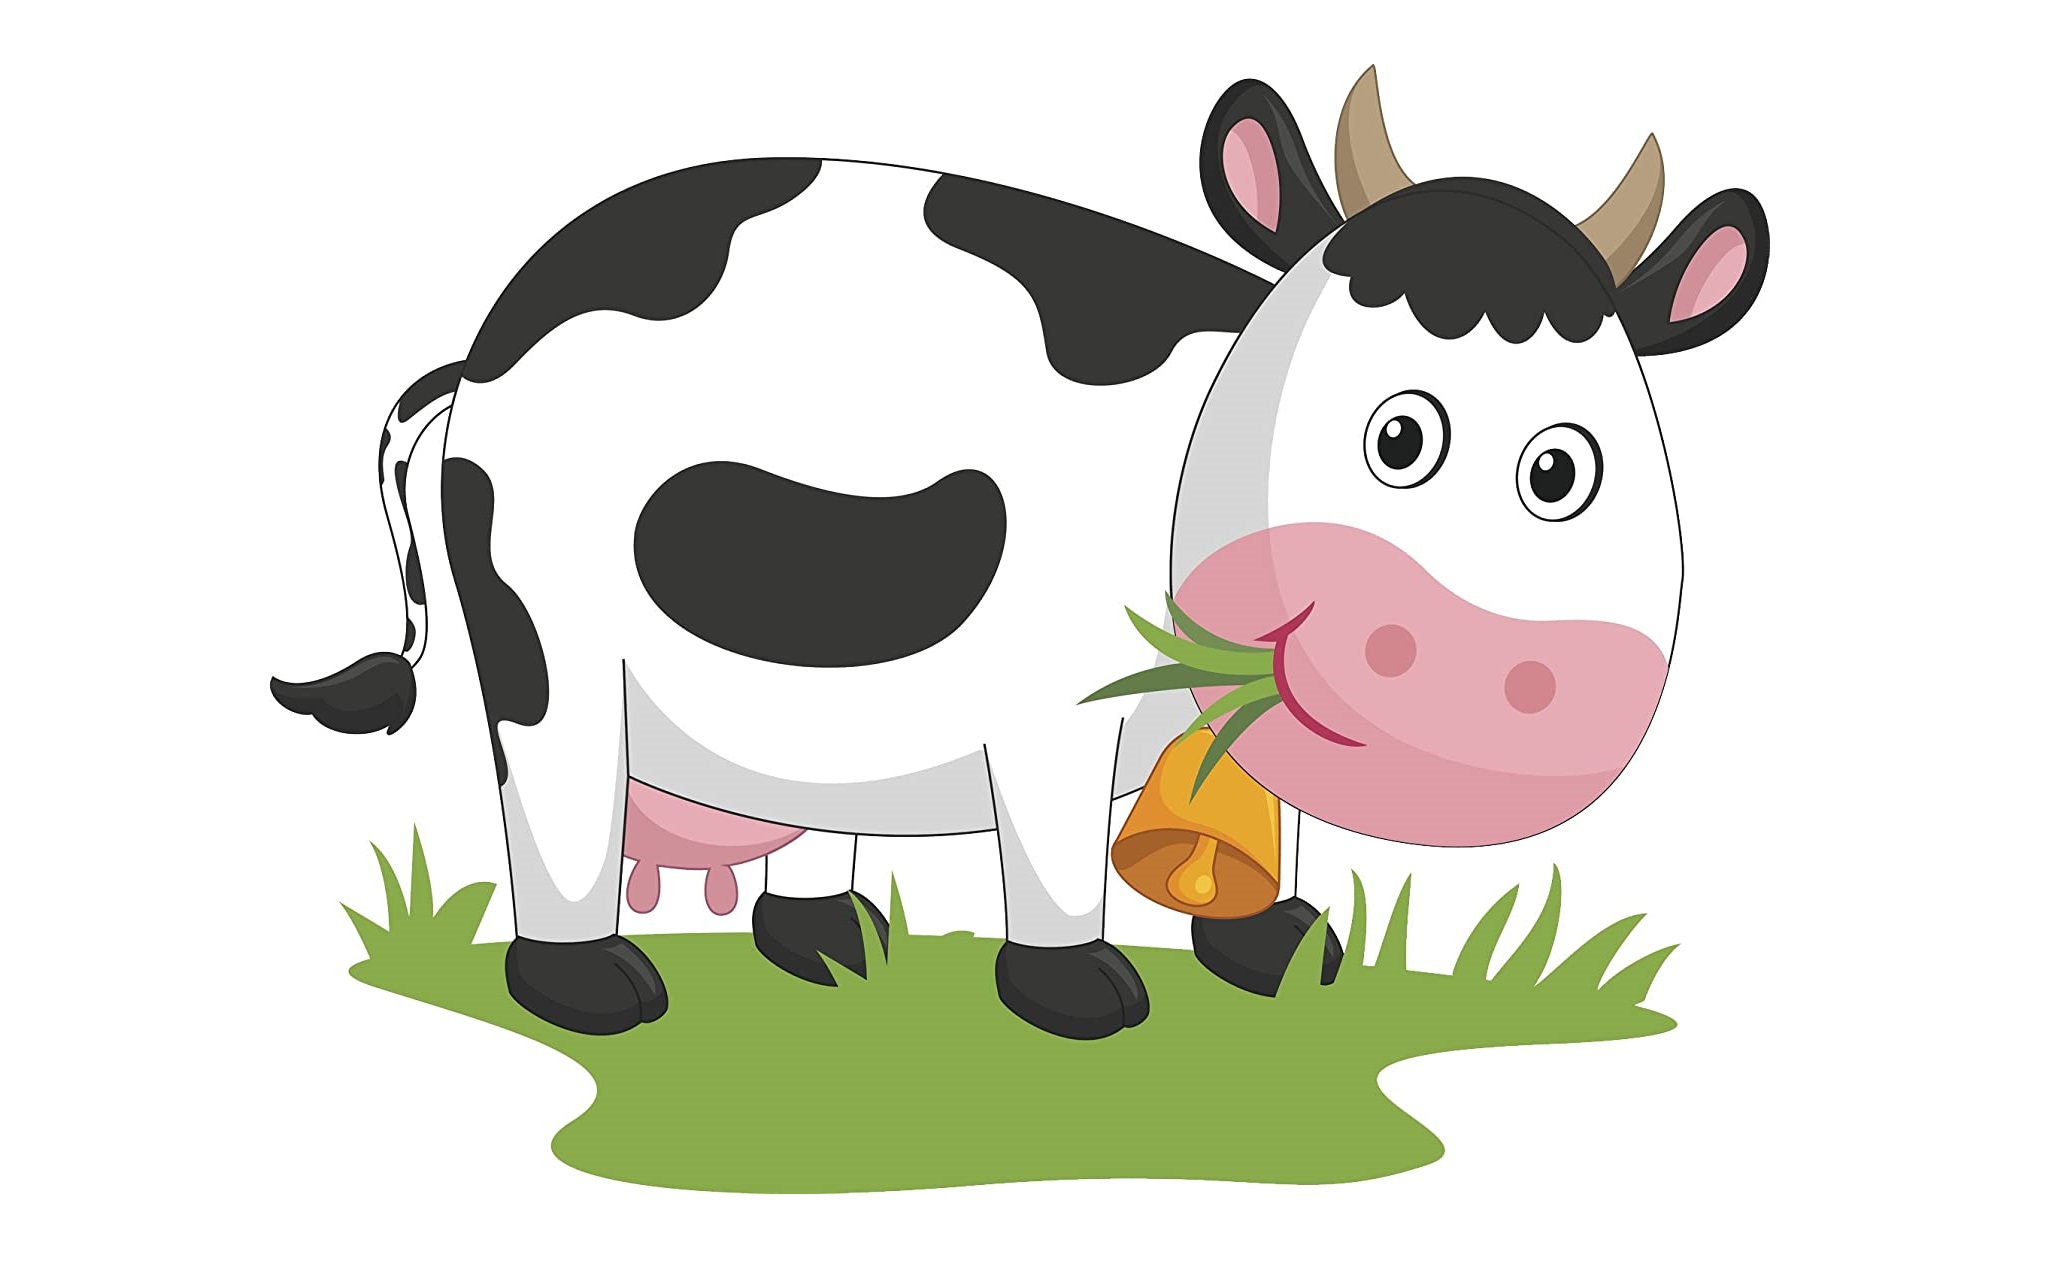 Địa Friesian gia súc phim Hoạt hình Vẽ Hoạ  bò sữa png tải về  Miễn phí  trong suốt Màu Hồng png Tải về